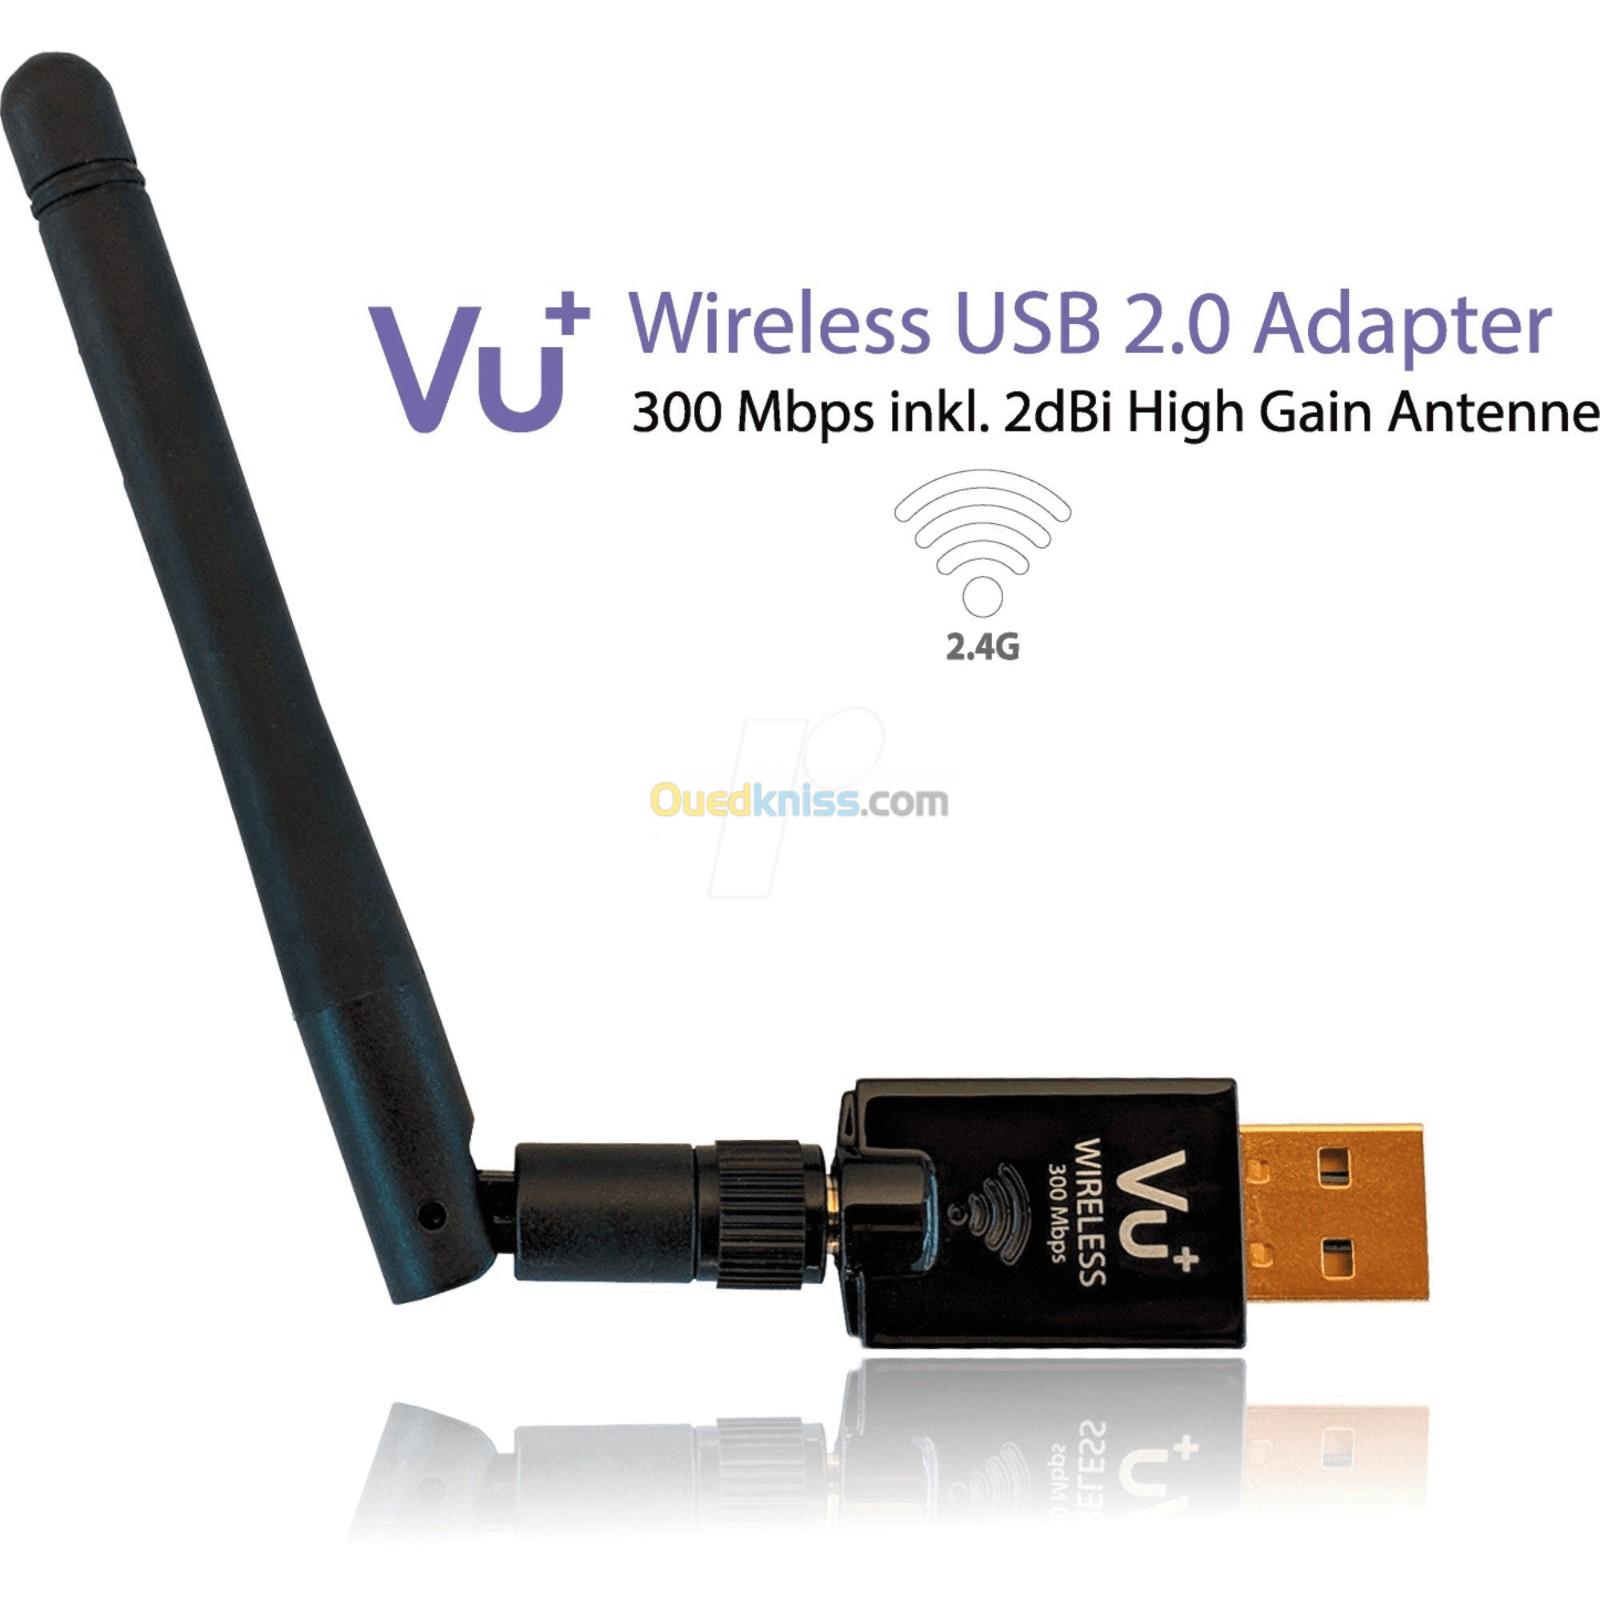 Clé wifi wireless usb adapter adapter 300mbps vu+